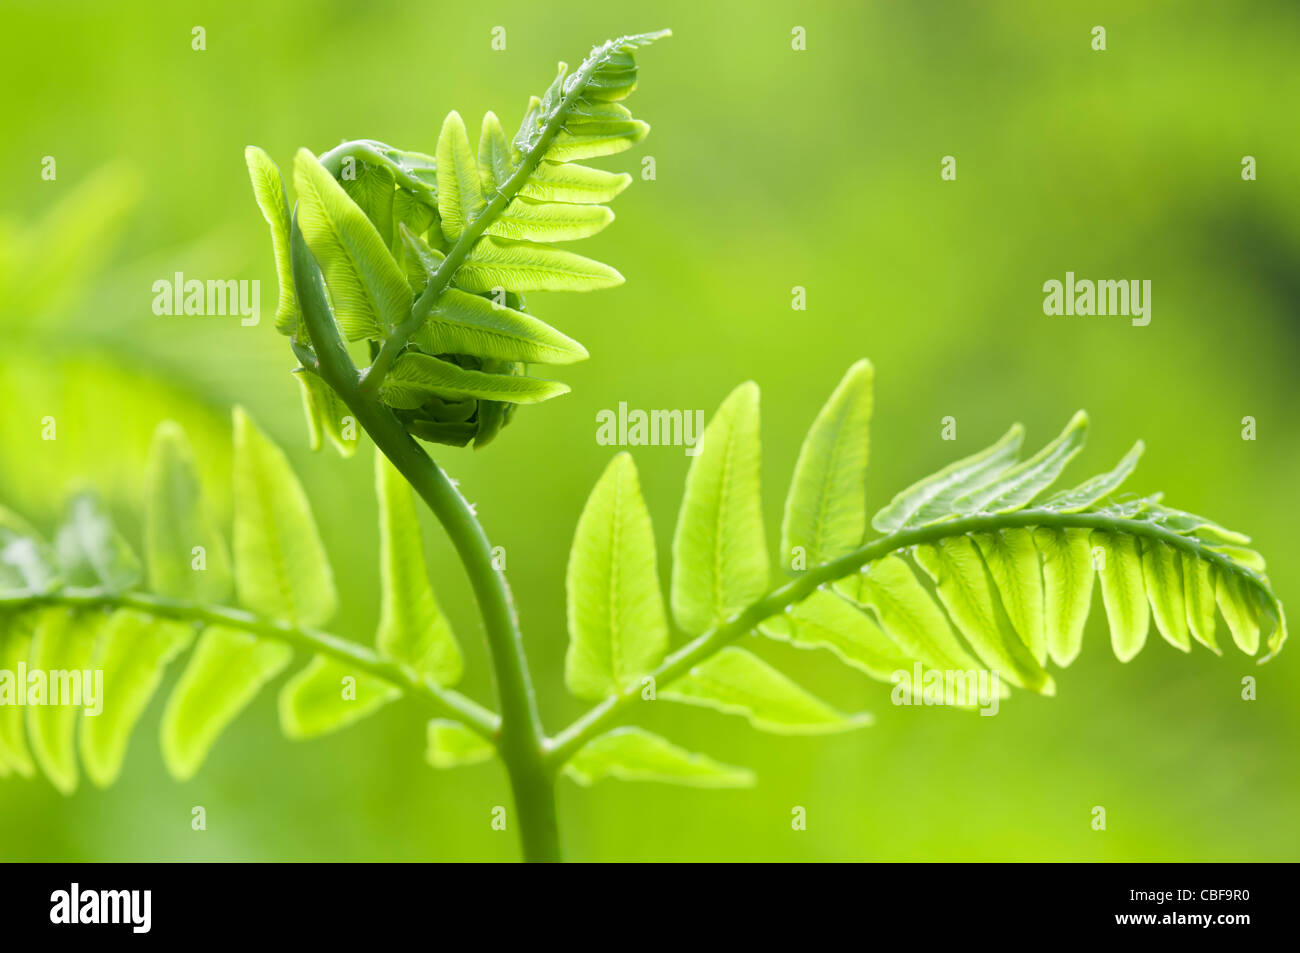 Osmunda regalis, foglia di felce dispiegarsi, oggetto verde, sfondo verde. Foto Stock